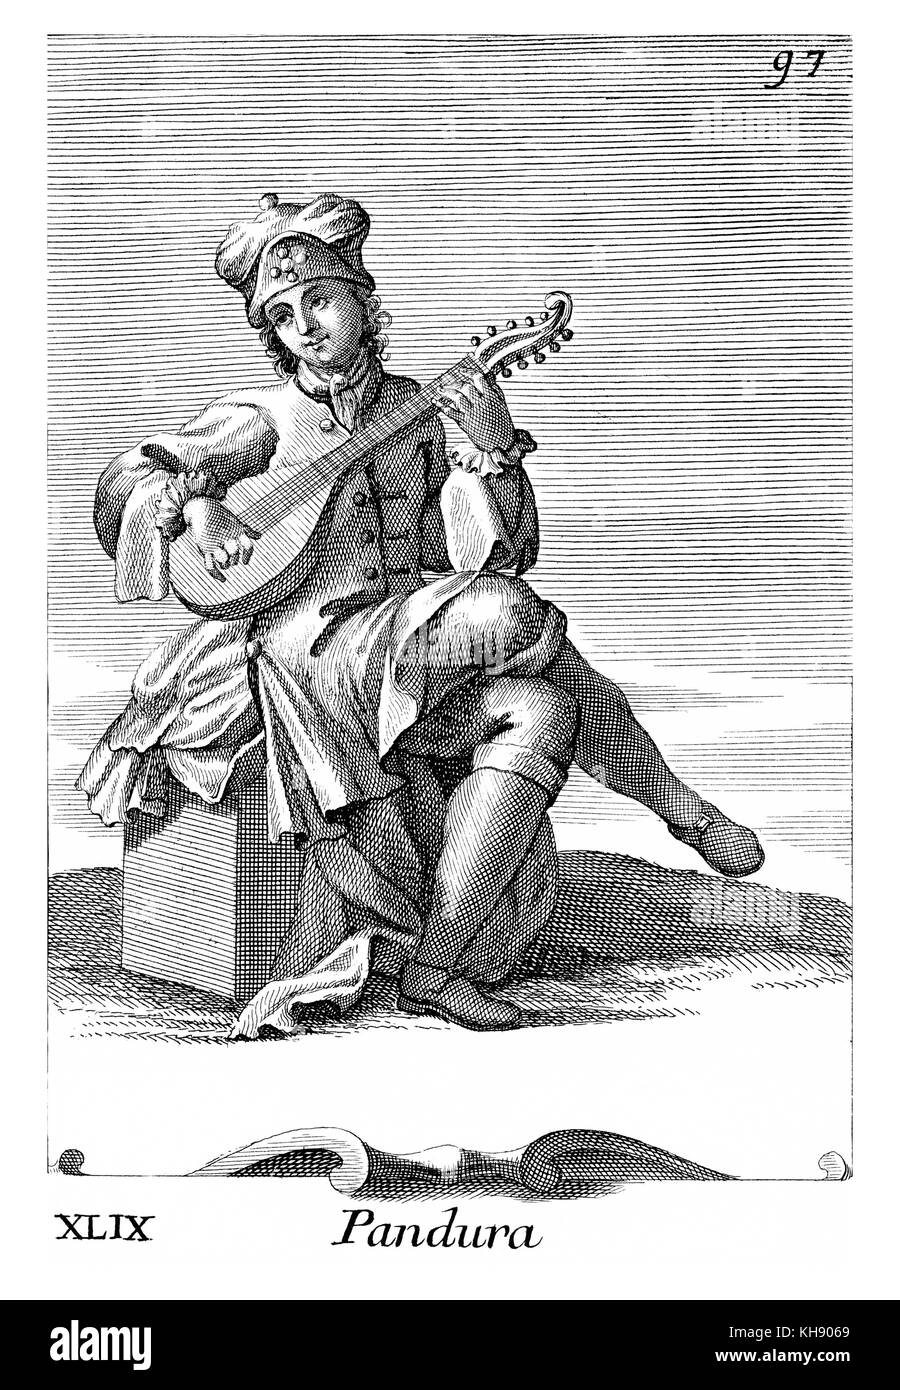 Mann spielt Cister (Pandura). Abbildung von Filippo Bonanni's 'Gabinetto Armonico" im Jahre 1723 veröffentlicht, Abbildung 49. Kupferstich von Arnold Van Westerhout. Bildunterschrift liest Pandura. Stockfoto